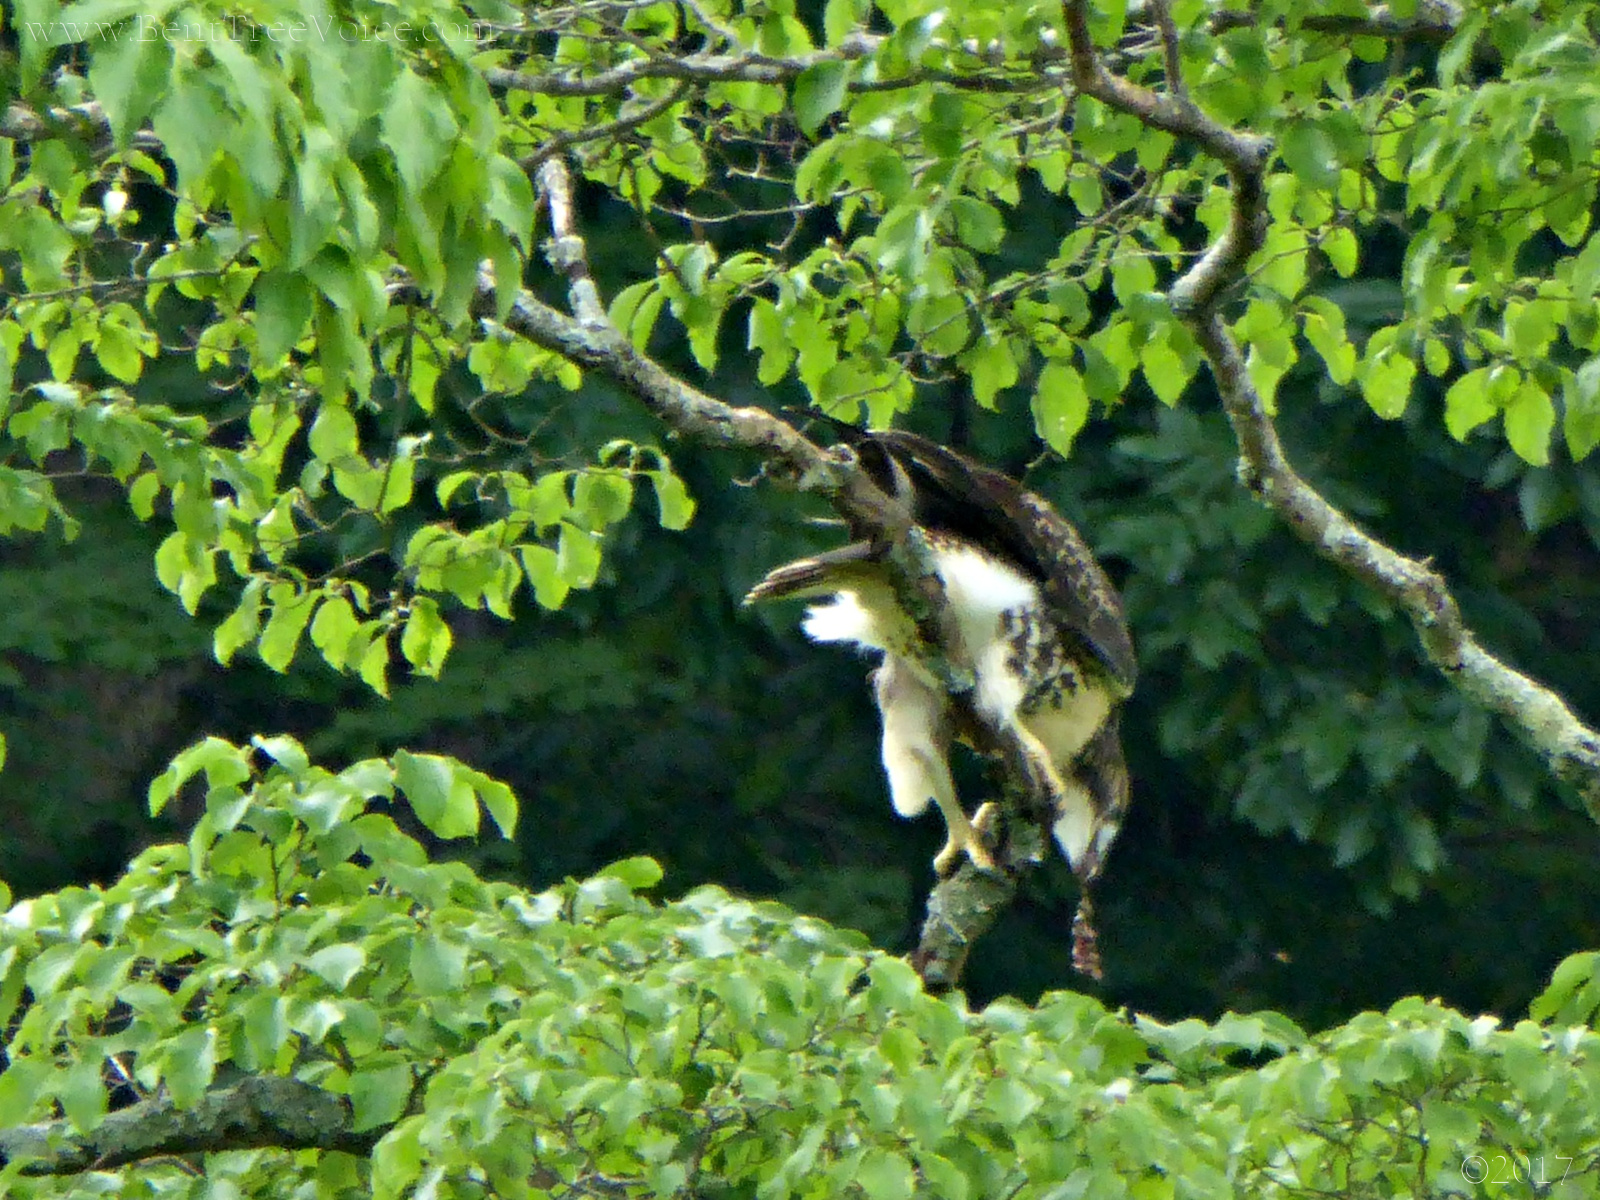 June 20, 2017 - Hawk eating in Bent Tree